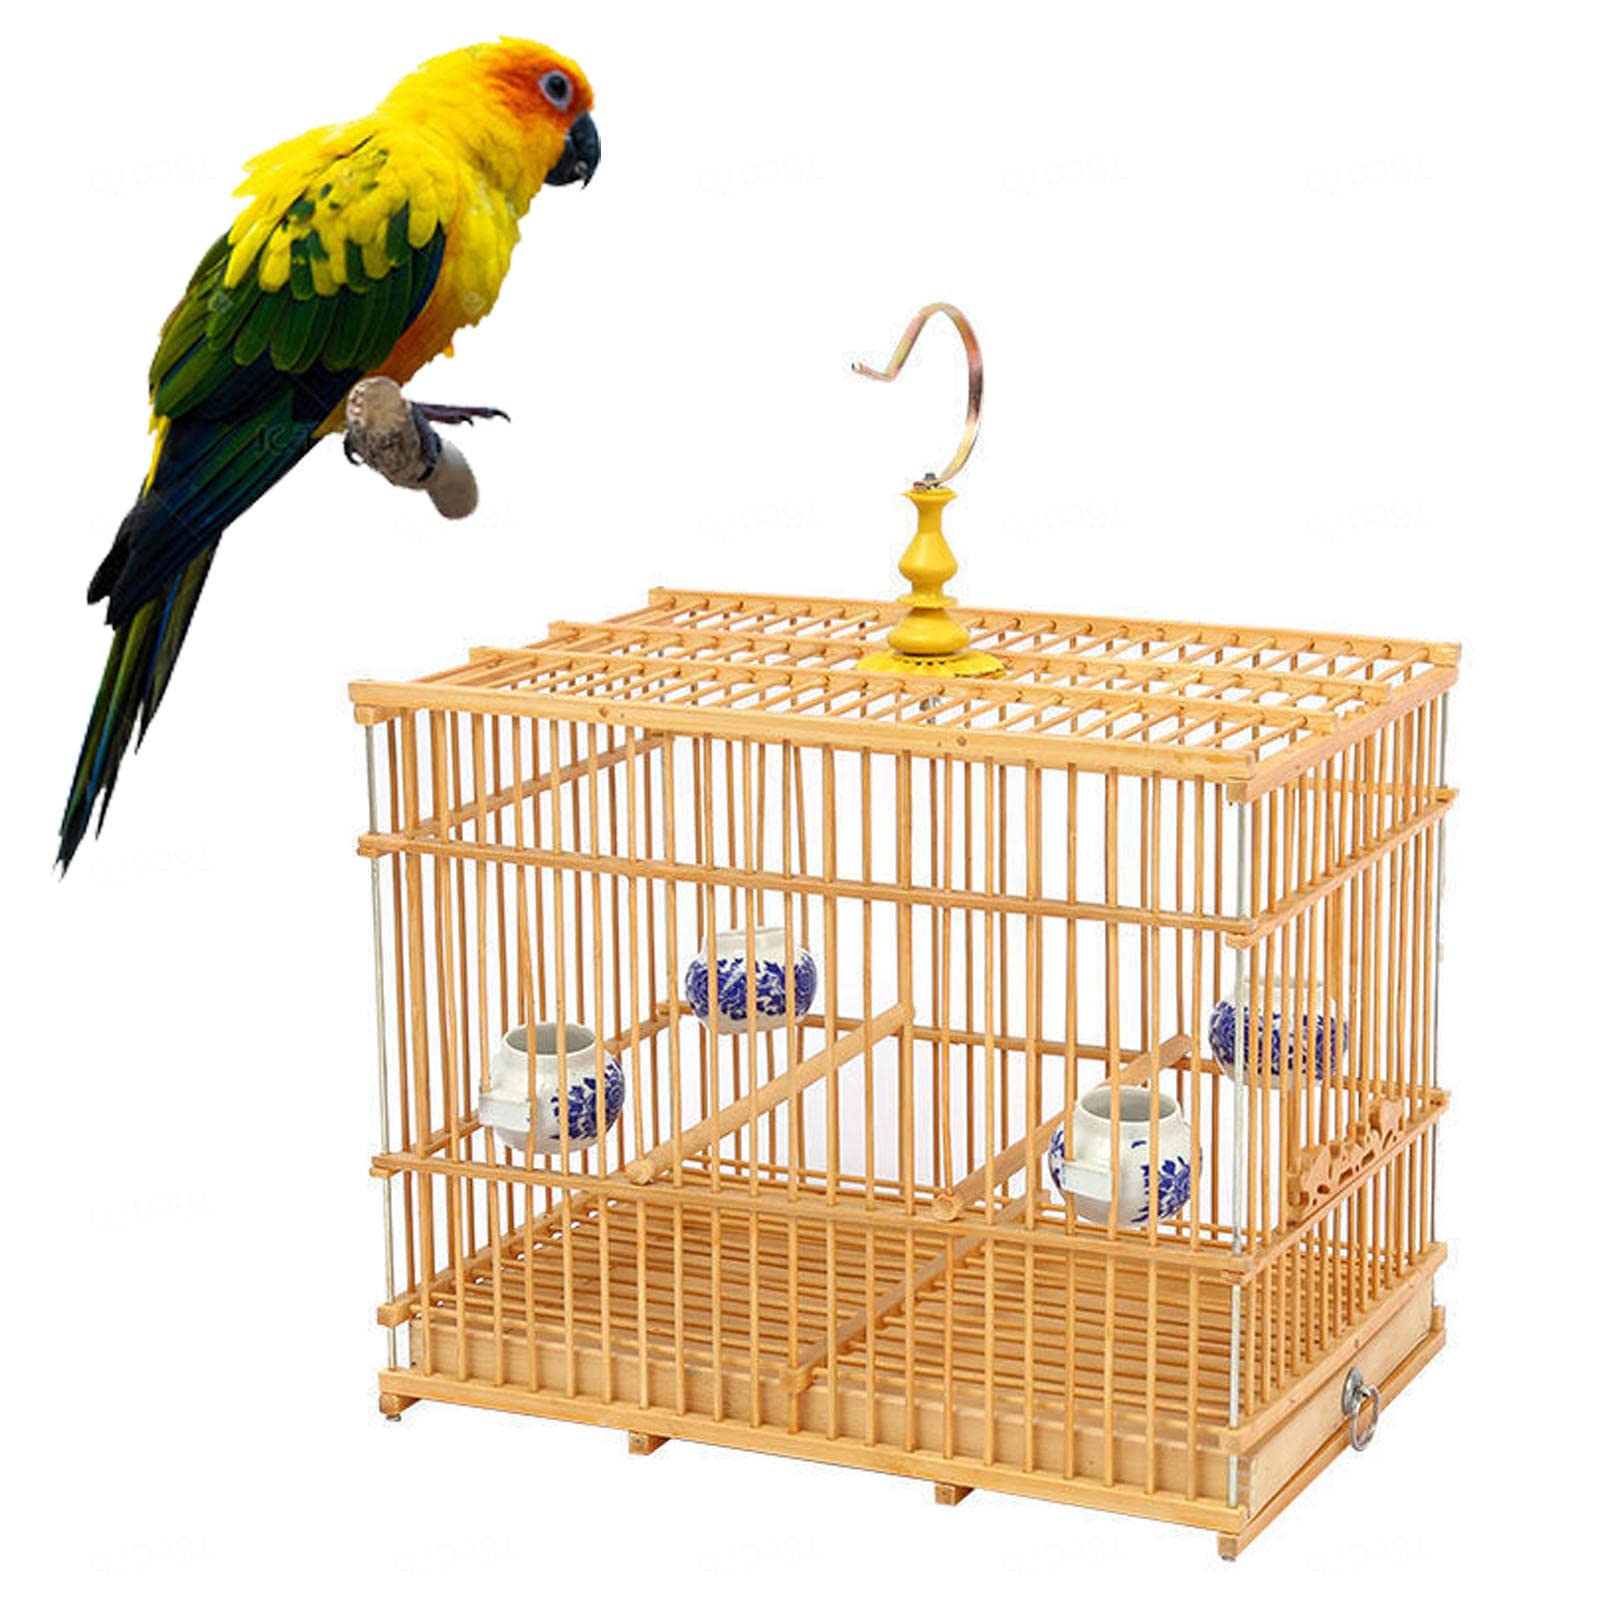 Quadratischer Vogelkäfig mit Futterspender Kunststoff-Vogelhaus zum Aufhängen mit Haken für kleine Vögel, Sittiche, Finken, Nymphensittiche